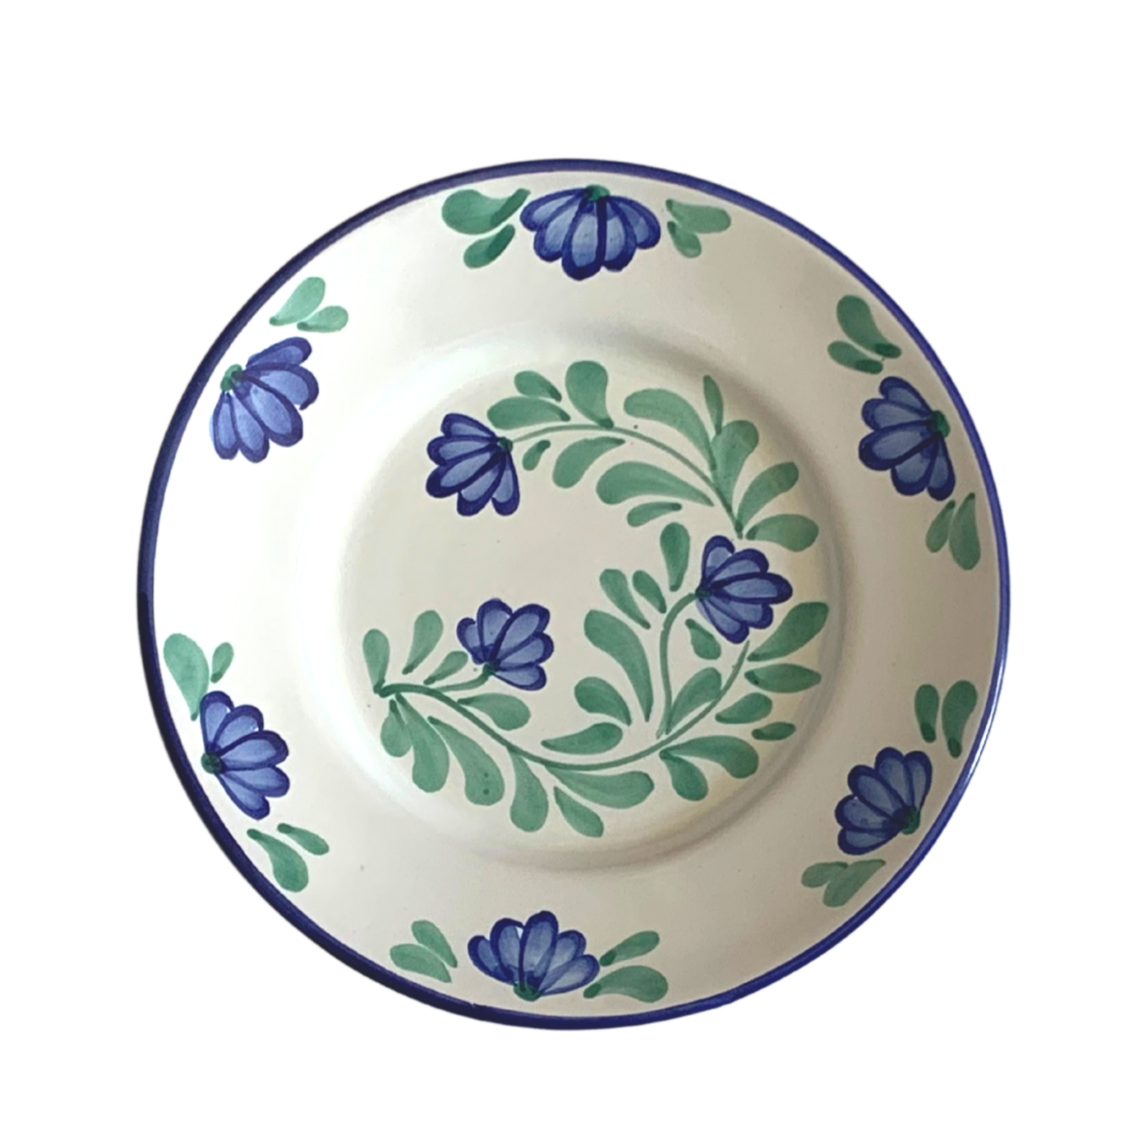 Petite assiette à fleurs bleues et vertes - Luisa Molleni